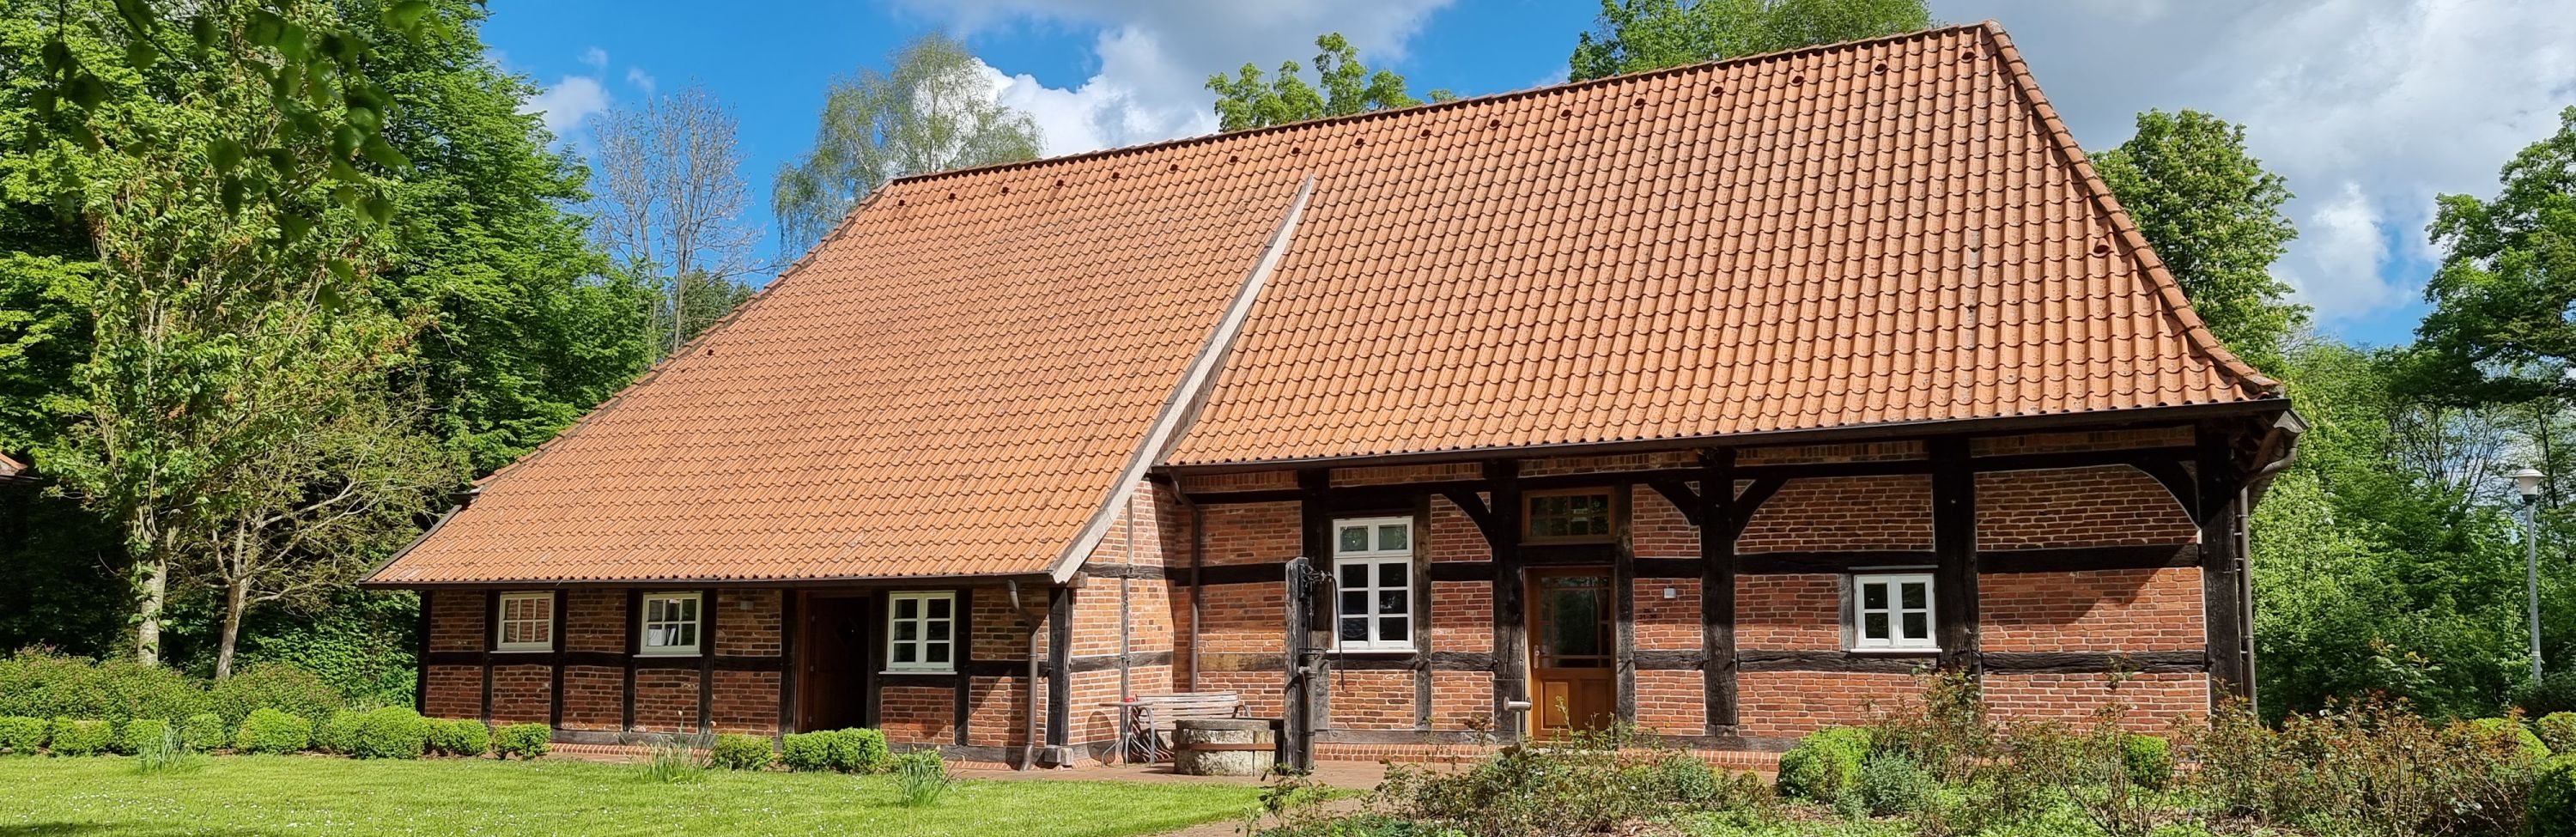 Ziegelhaus mit Fachwerk, grüne Wiese und Nutzgarten